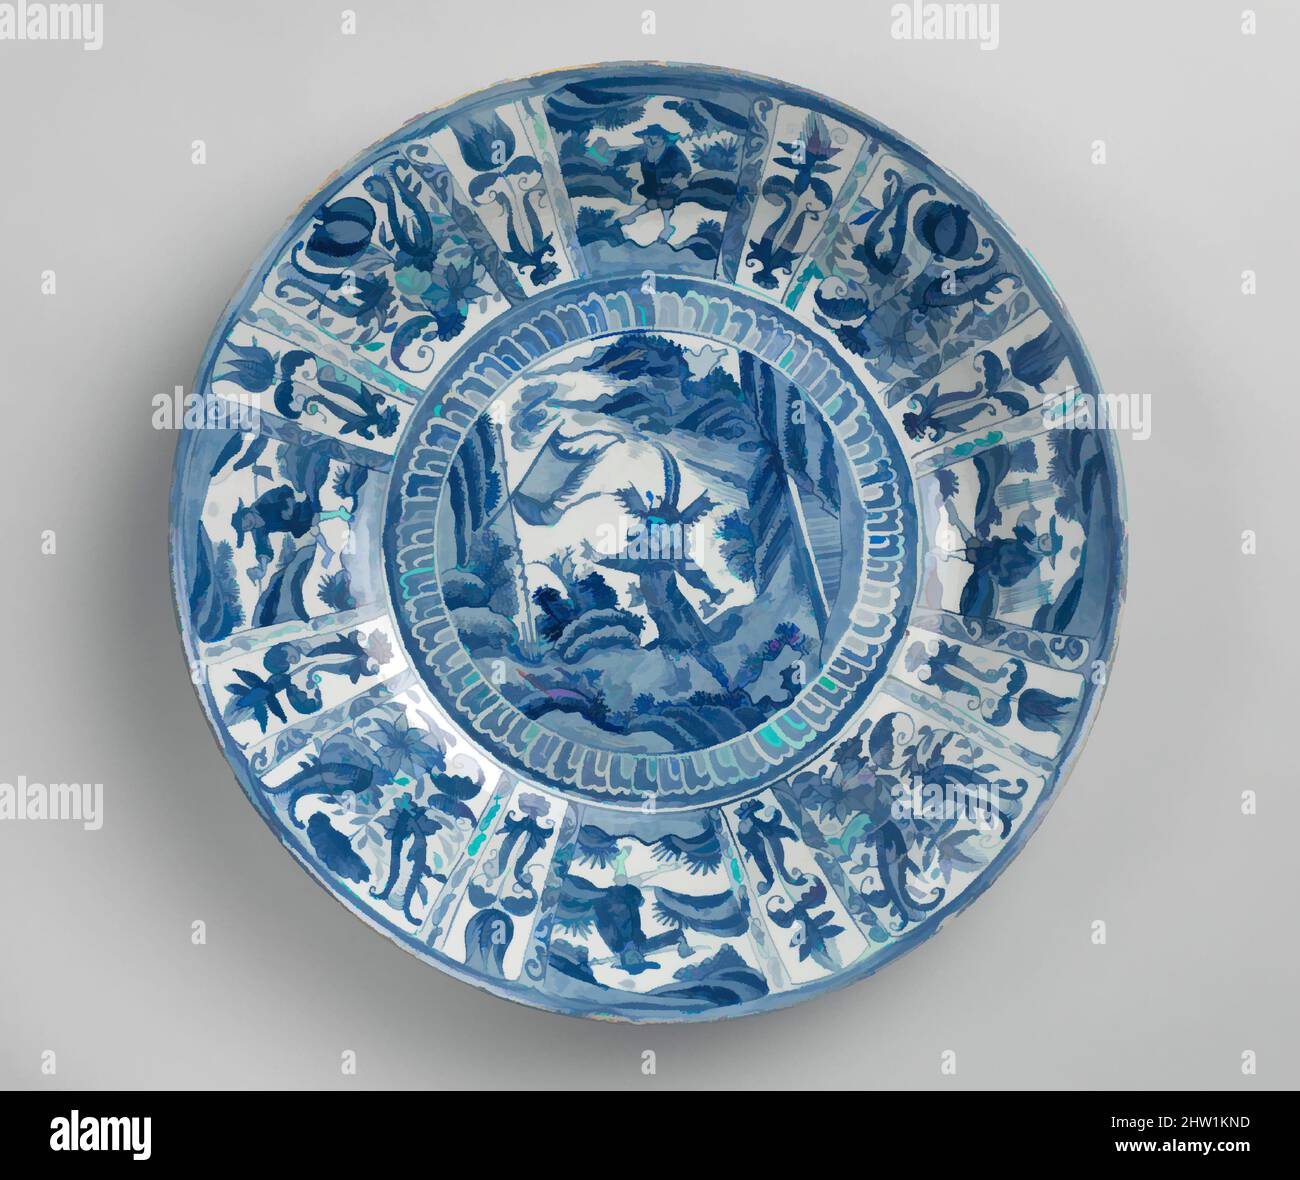 Art inspiré par un plat au guerrier, dynastie Ming (1368–1644), période de Chongqing (1627–44), Chine, porcelaine peinte en bleu cobalt sous un vernis transparent (Jingdezhen Kraak ware), H. 4 in. (10,2 cm) ; diamètre 18 5/8 po (47,3 cm) ; diam. Du pied 10 1/2 po (26,7 cm), céramique, The, œuvres classiques modernisées par Artotop avec une touche de modernité. Formes, couleur et valeur, impact visuel accrocheur sur l'art émotions par la liberté d'œuvres d'art d'une manière contemporaine. Un message intemporel qui cherche une nouvelle direction créative. Artistes qui se tournent vers le support numérique et créent le NFT Artotop Banque D'Images